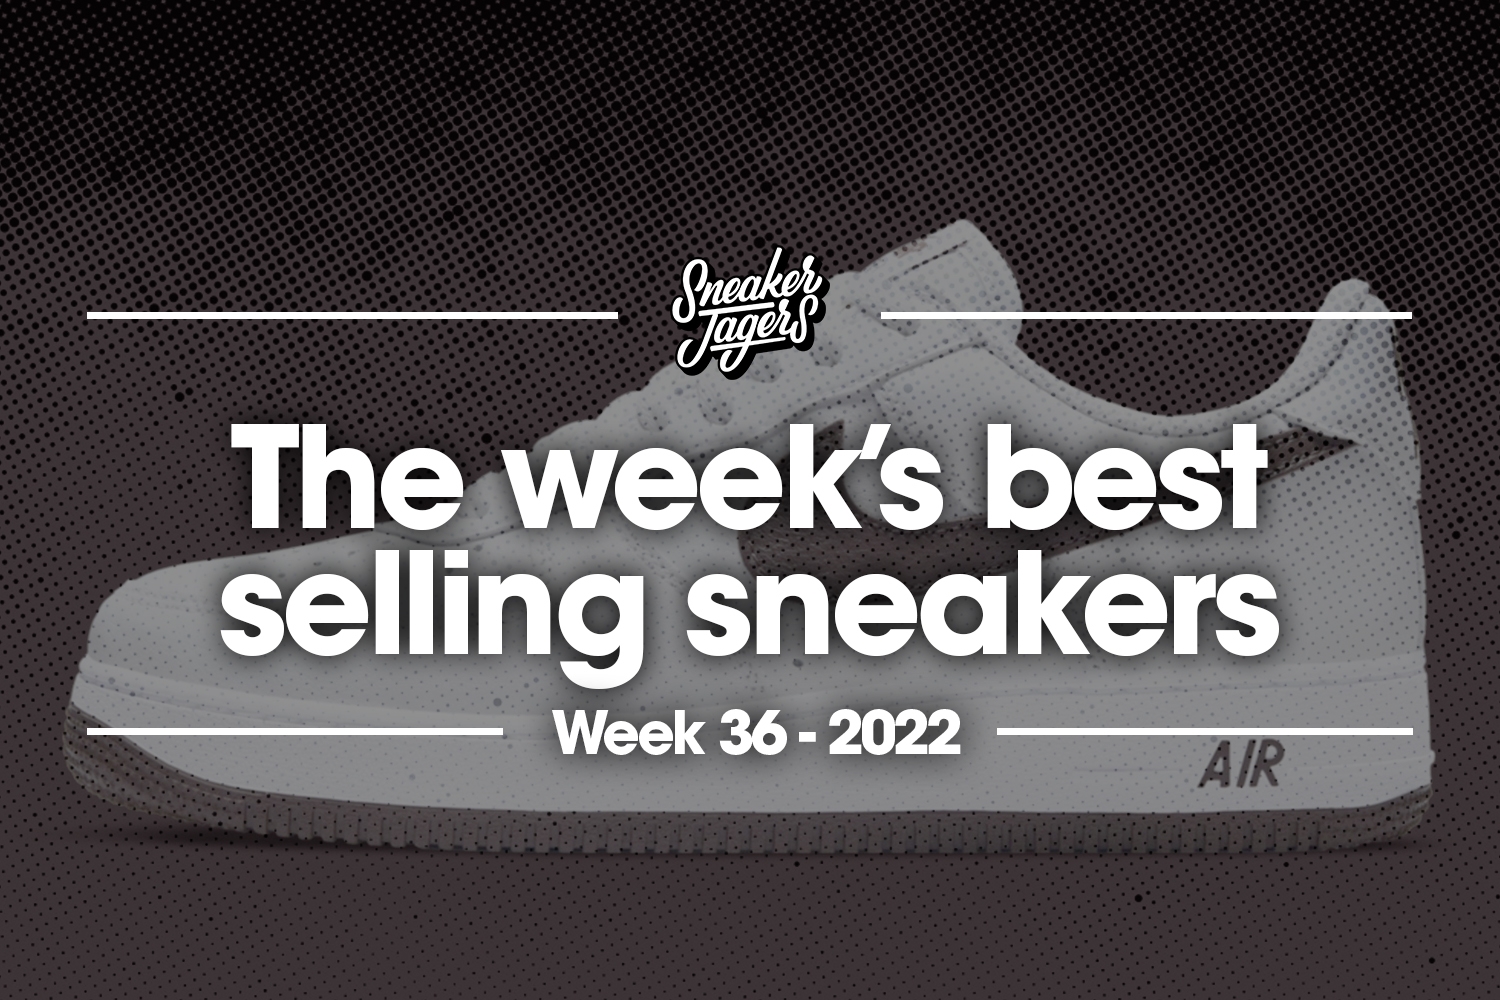 The 5 best-selling sneakers of week 36